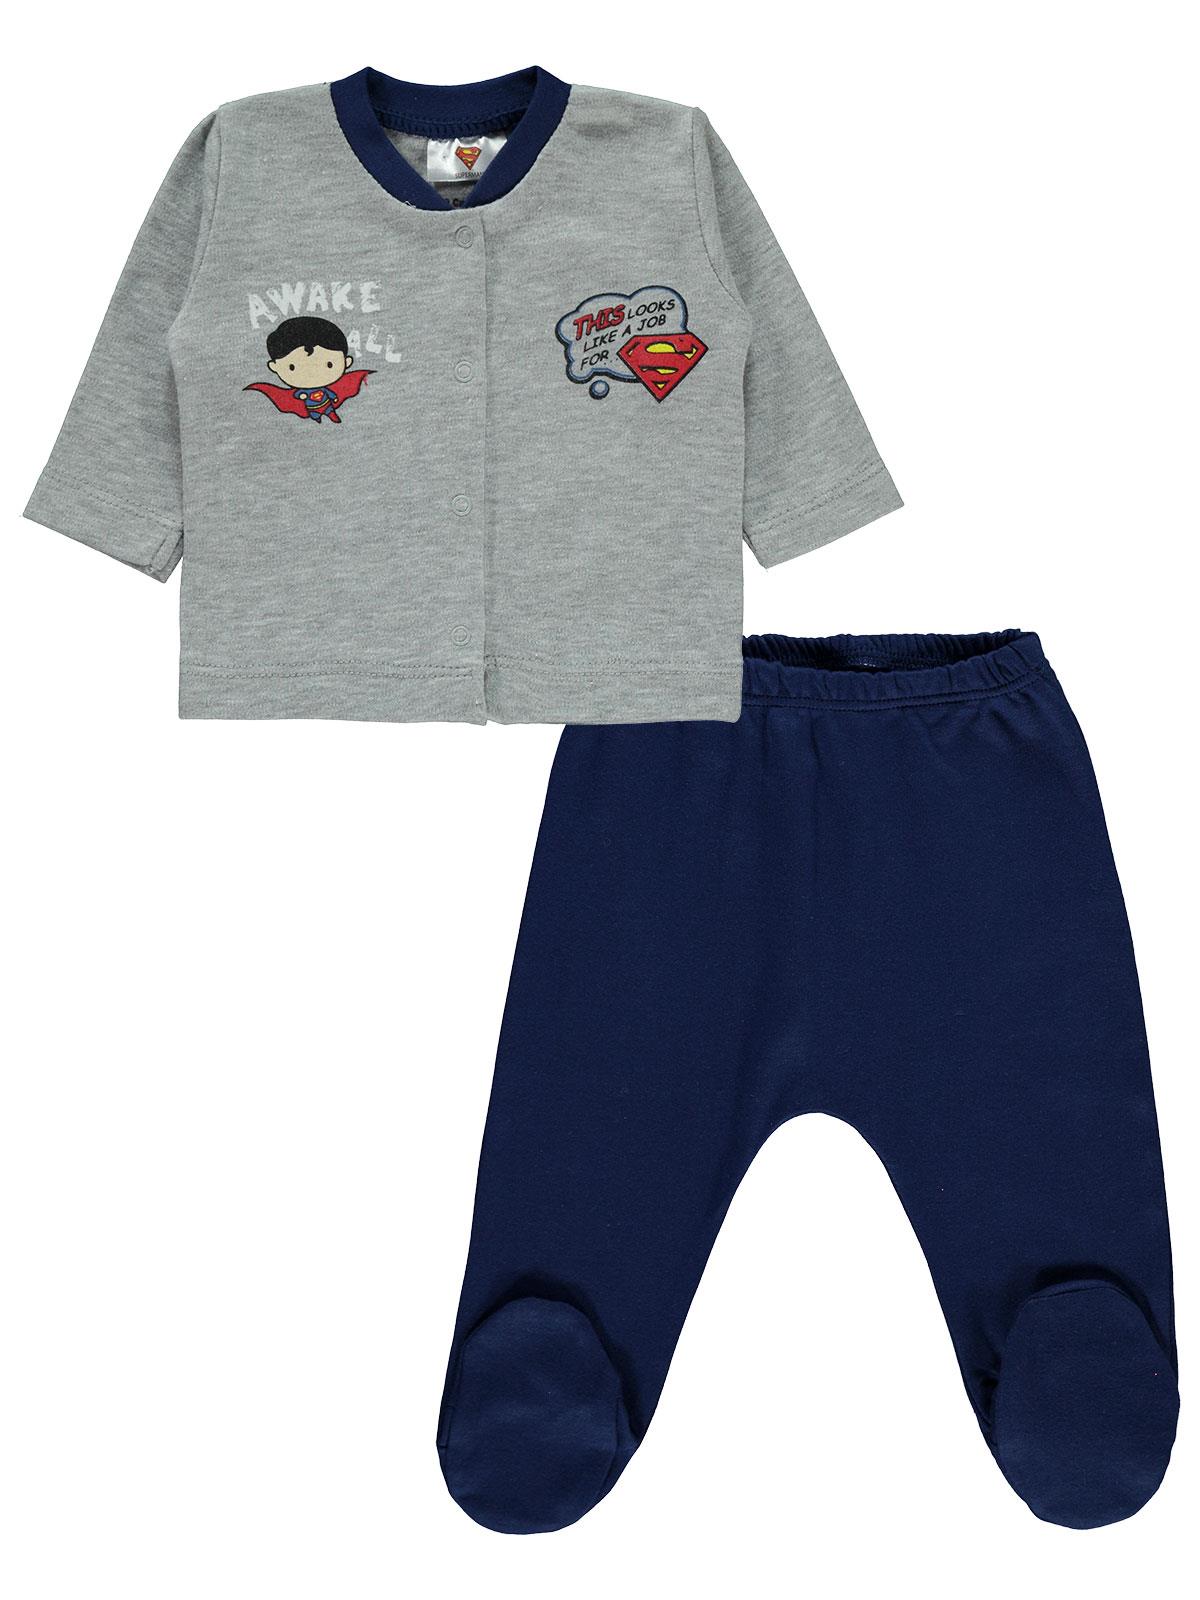 Superman Erkek Bebek Pijama Takımı 0-9 Ay Lacivert